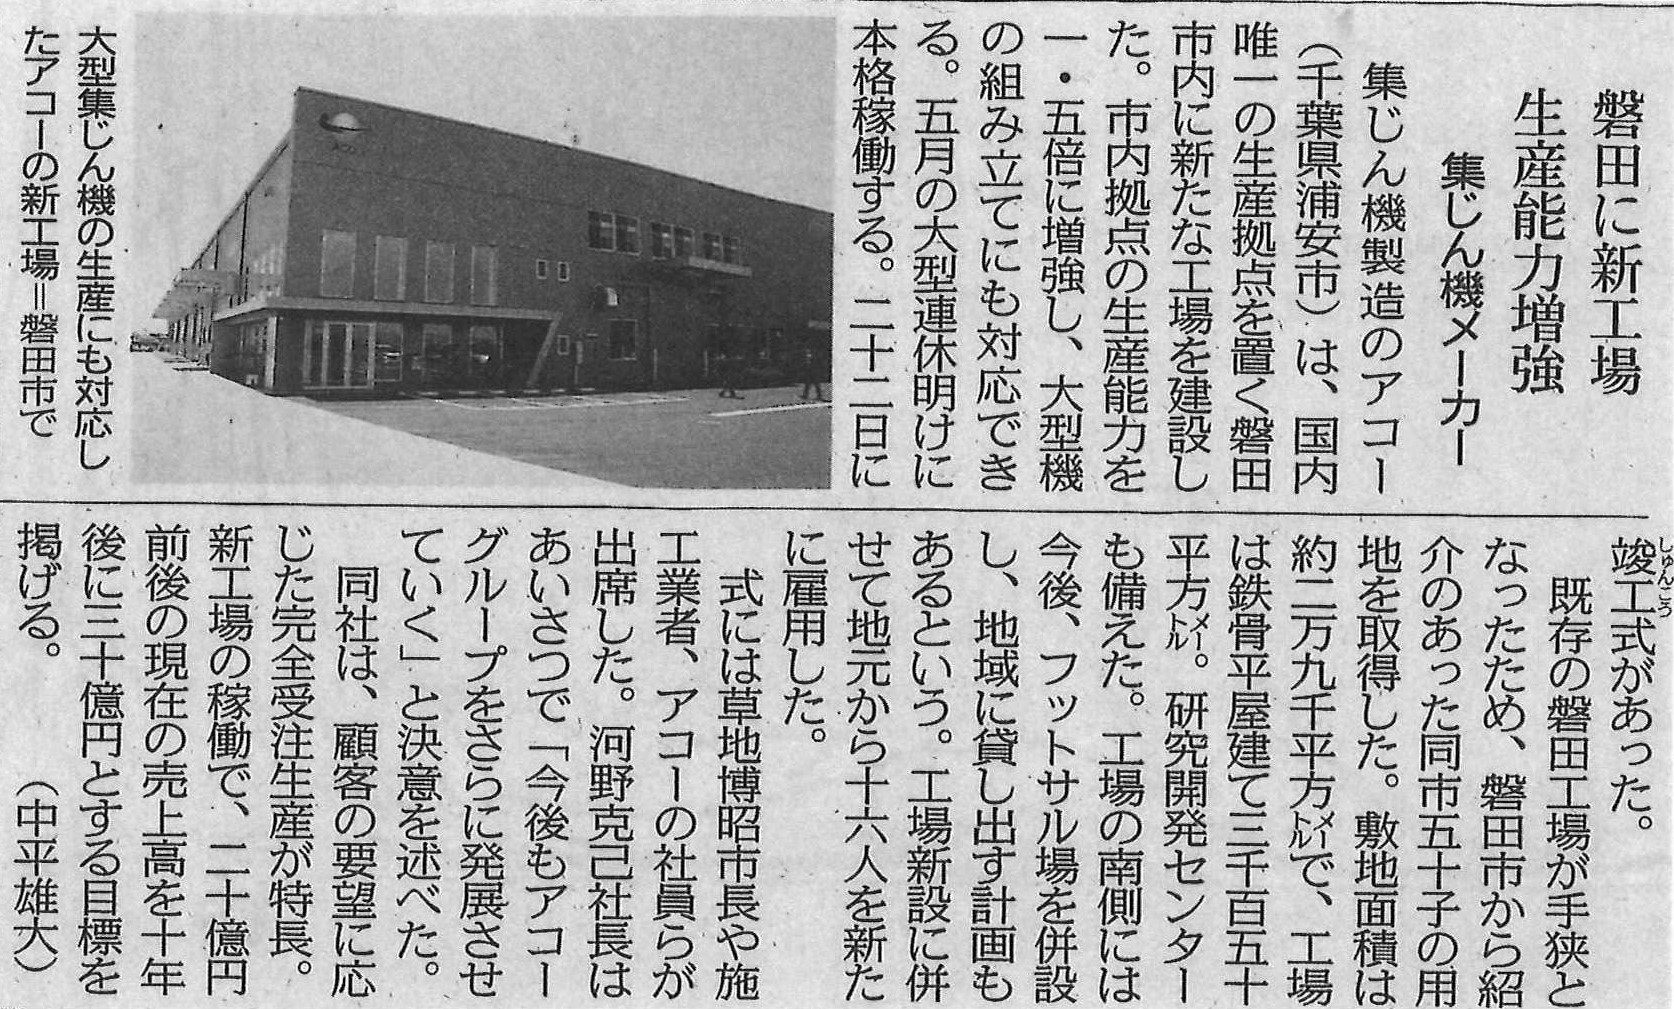 株式会社アコー様五十子工場が中日新聞に掲載されました。